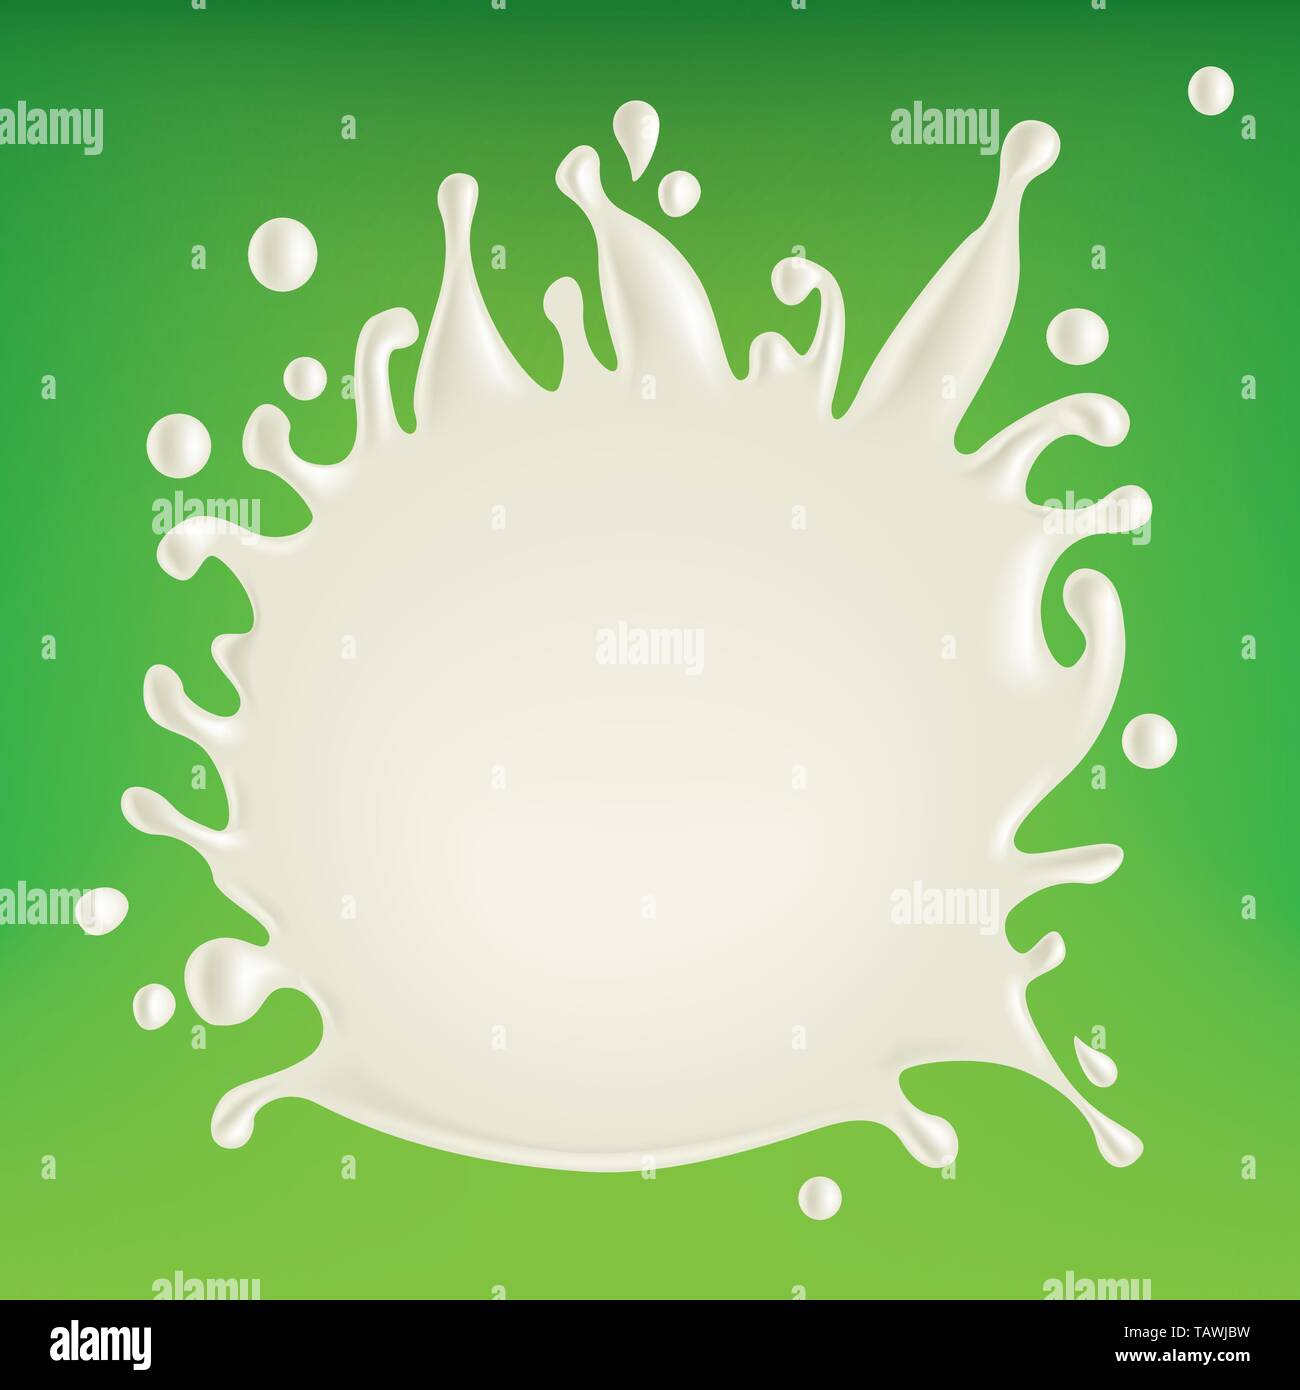 Illustrazione Vettoriale eps10. Abstract realistico schizzi di latte isolate su sfondo verde. Illustrazione Vettoriale